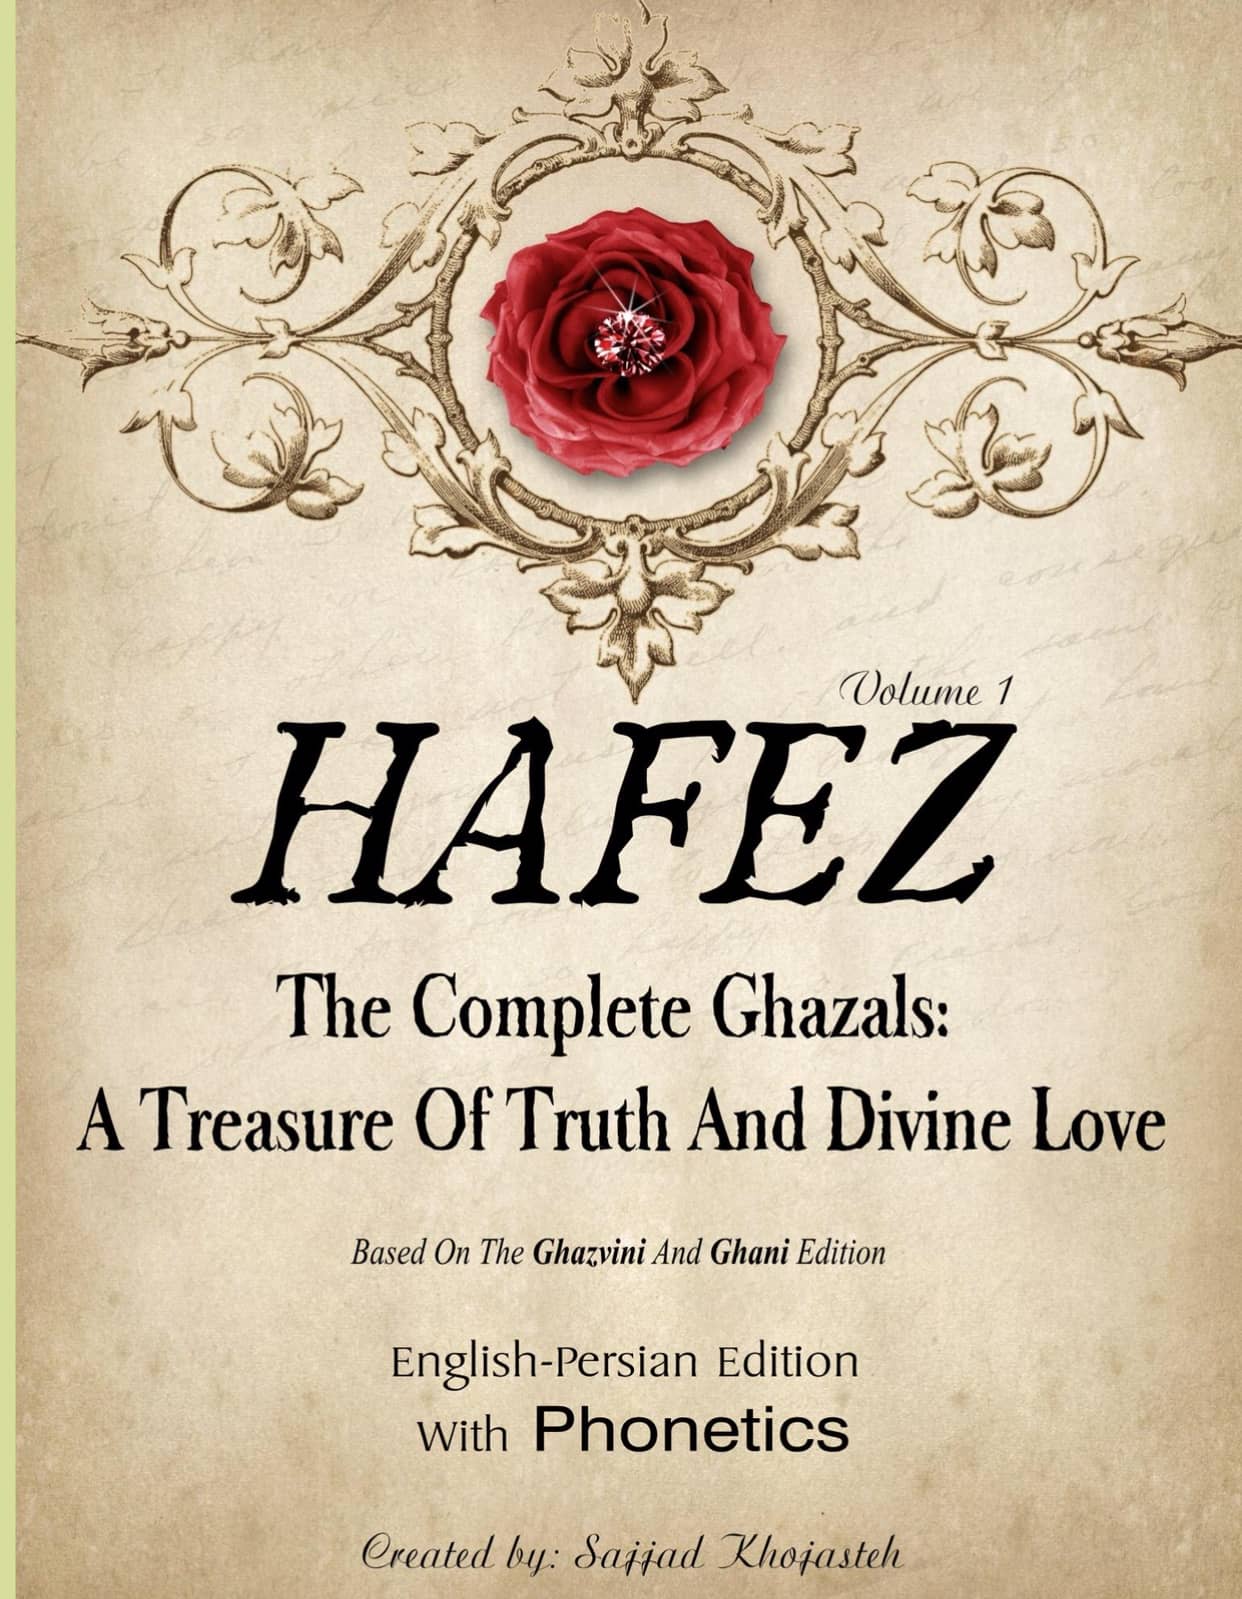 The complete Ghazals of Hafiz